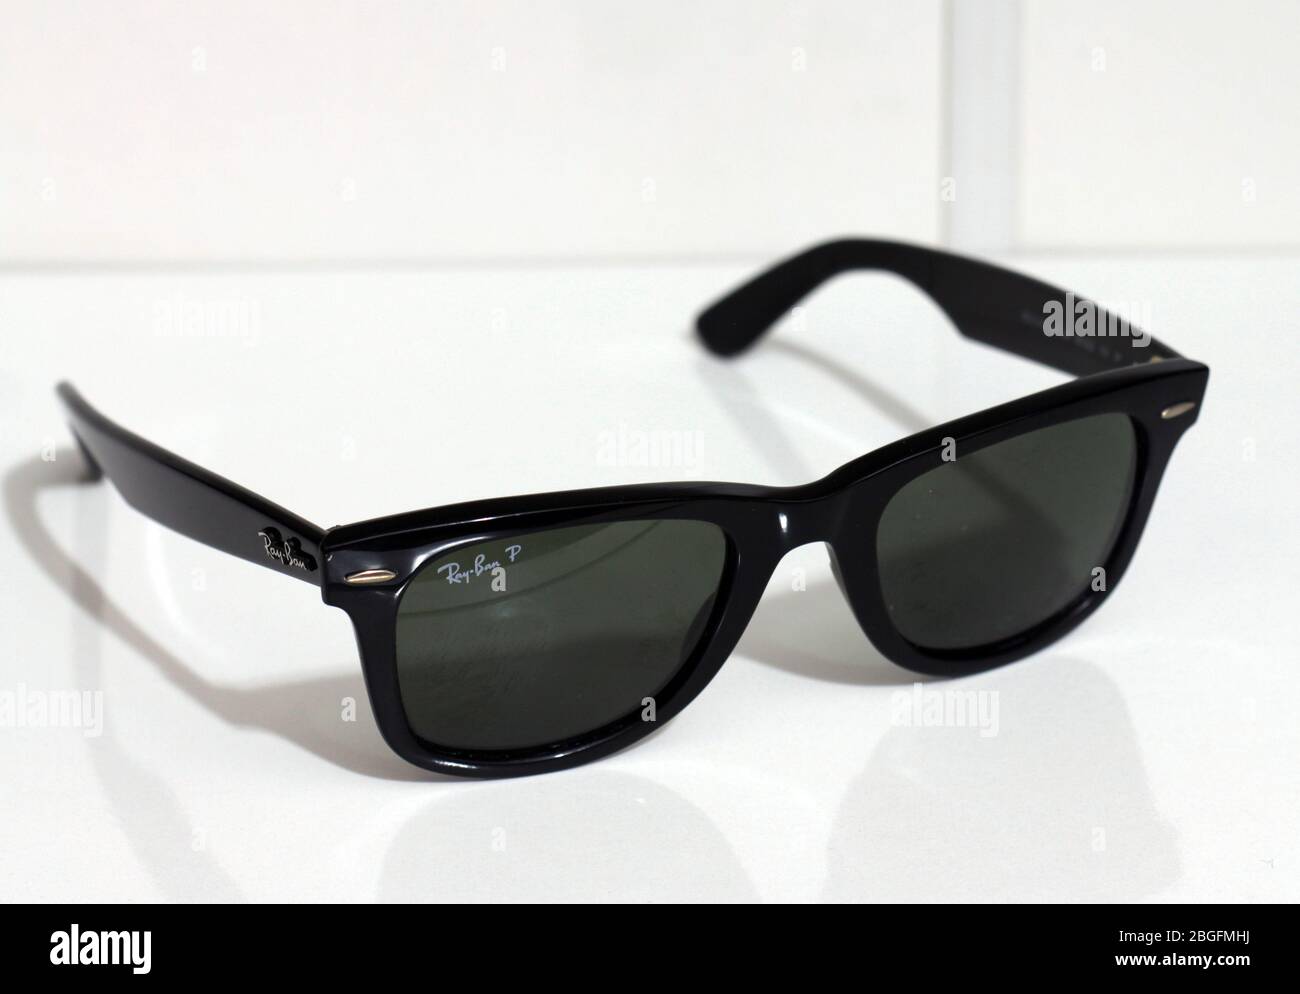 Ray-Ban Wayfarer. Iconic model. Polarized sunglasses. White background.  Close-up Stock Photo - Alamy